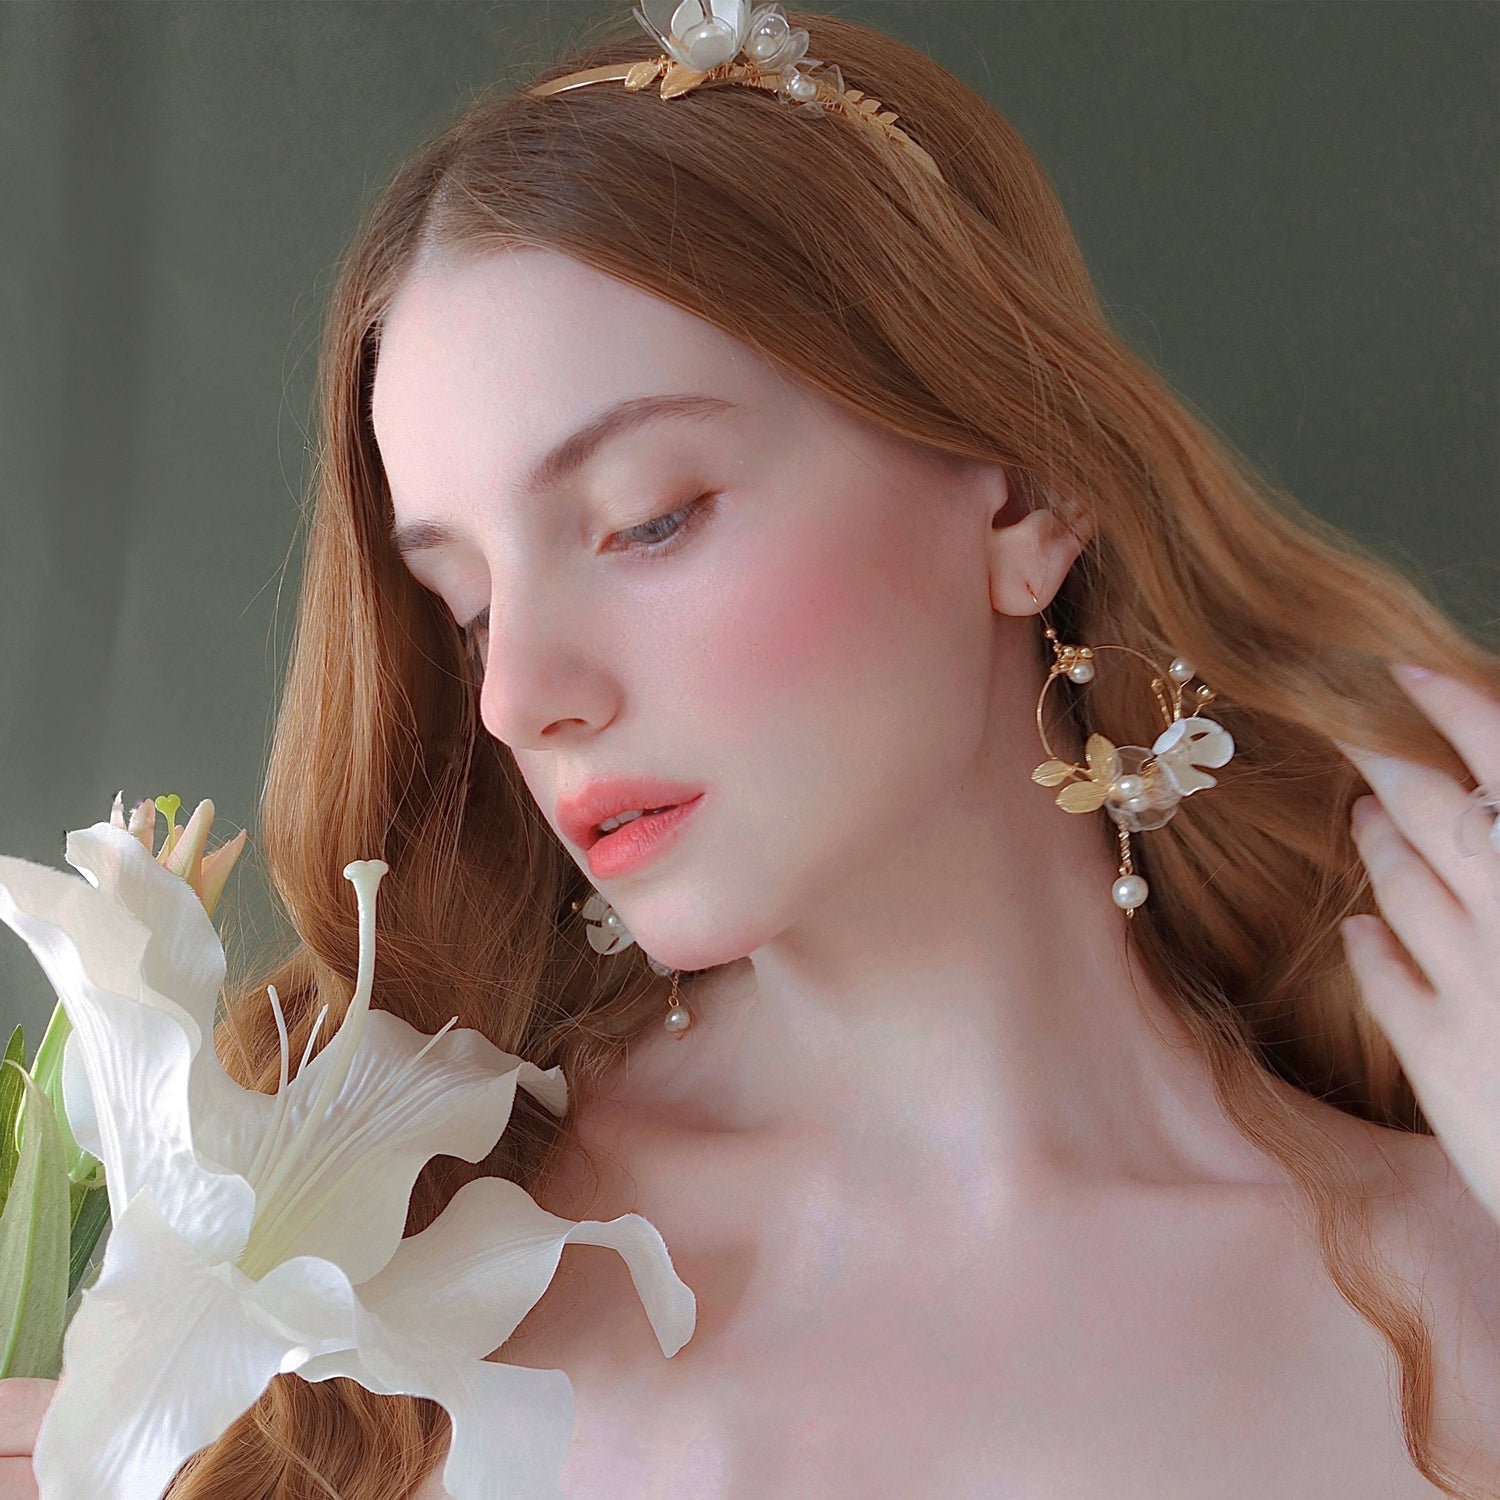 Florale Jugendstil-Ohrringe - Floral Art Nouveau Earrings-8